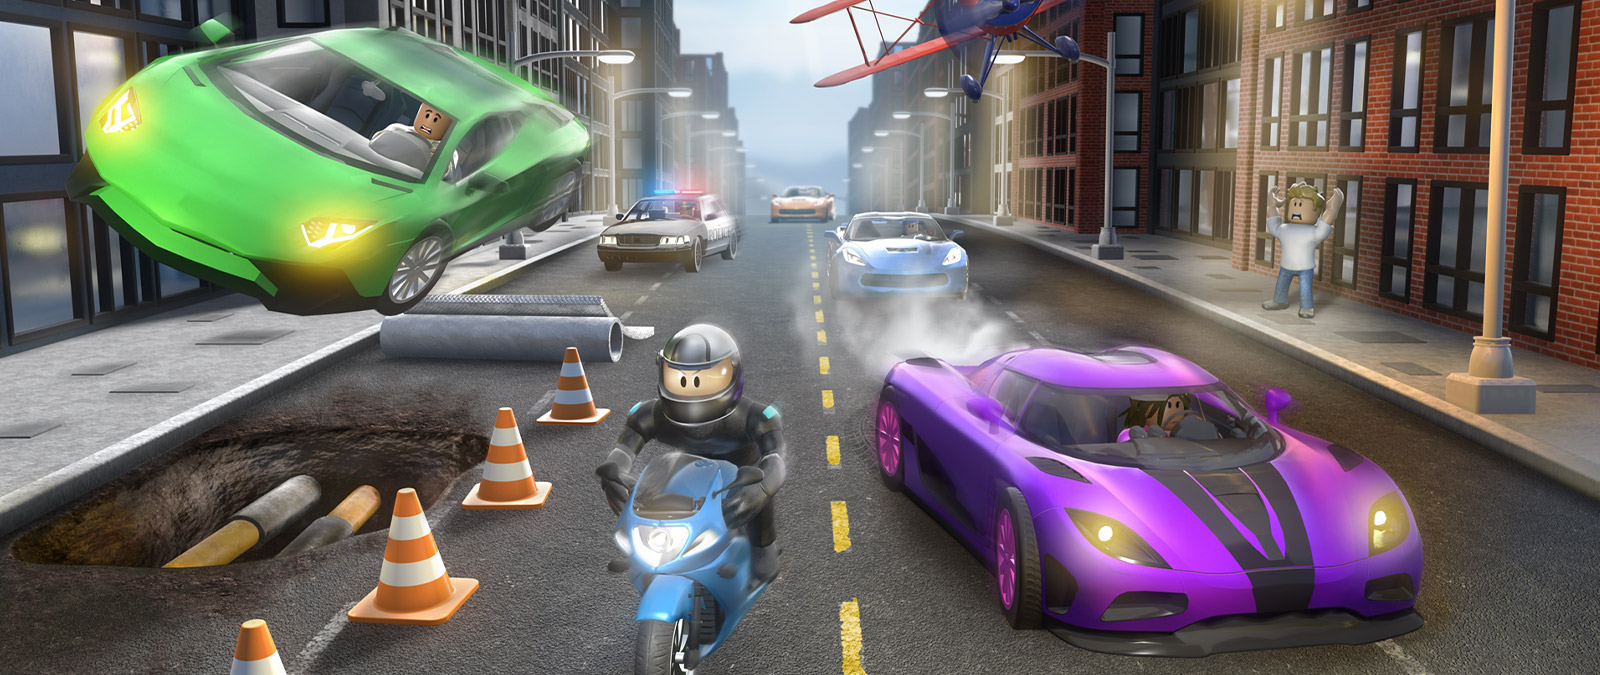 Motosiklete binmiş bir Roblox Vehicle Simulator karakteri, sokakta başka araçlar tarafından takip ediliyor